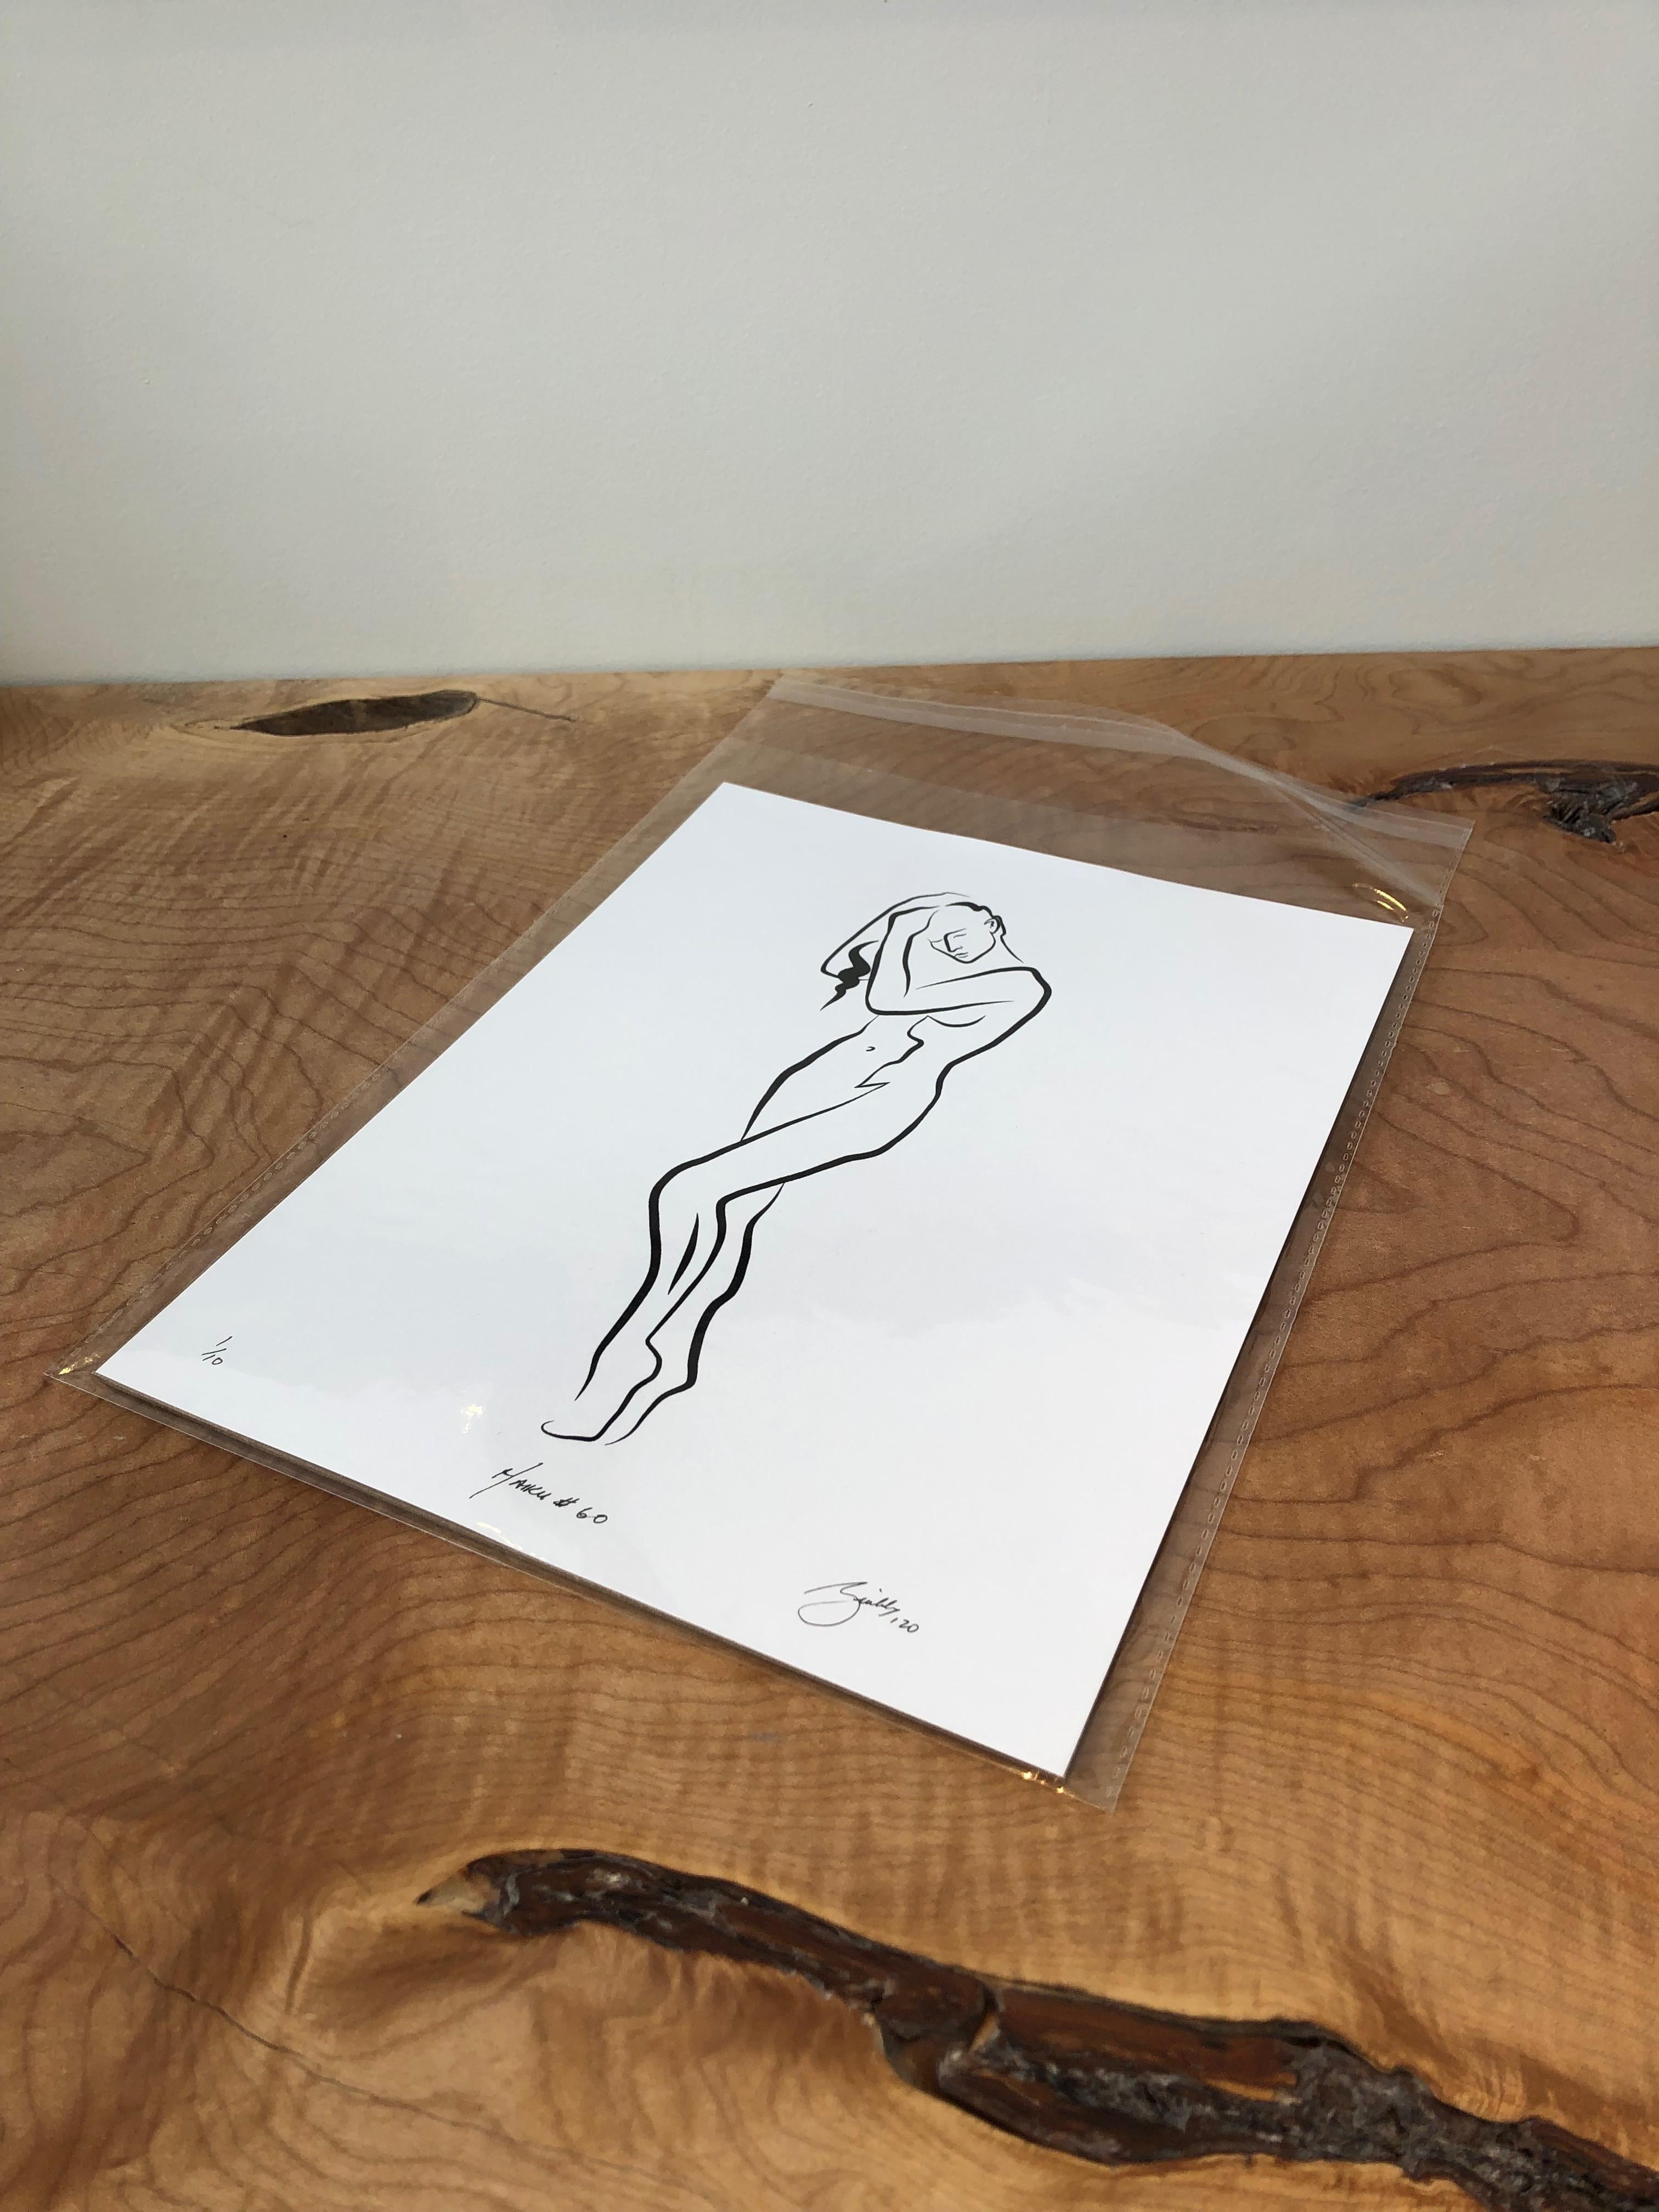 Haiku #60, 1/50 - Digital Vector Drawing Female Nude Standing Arranging Hair - Print by Michael Binkley